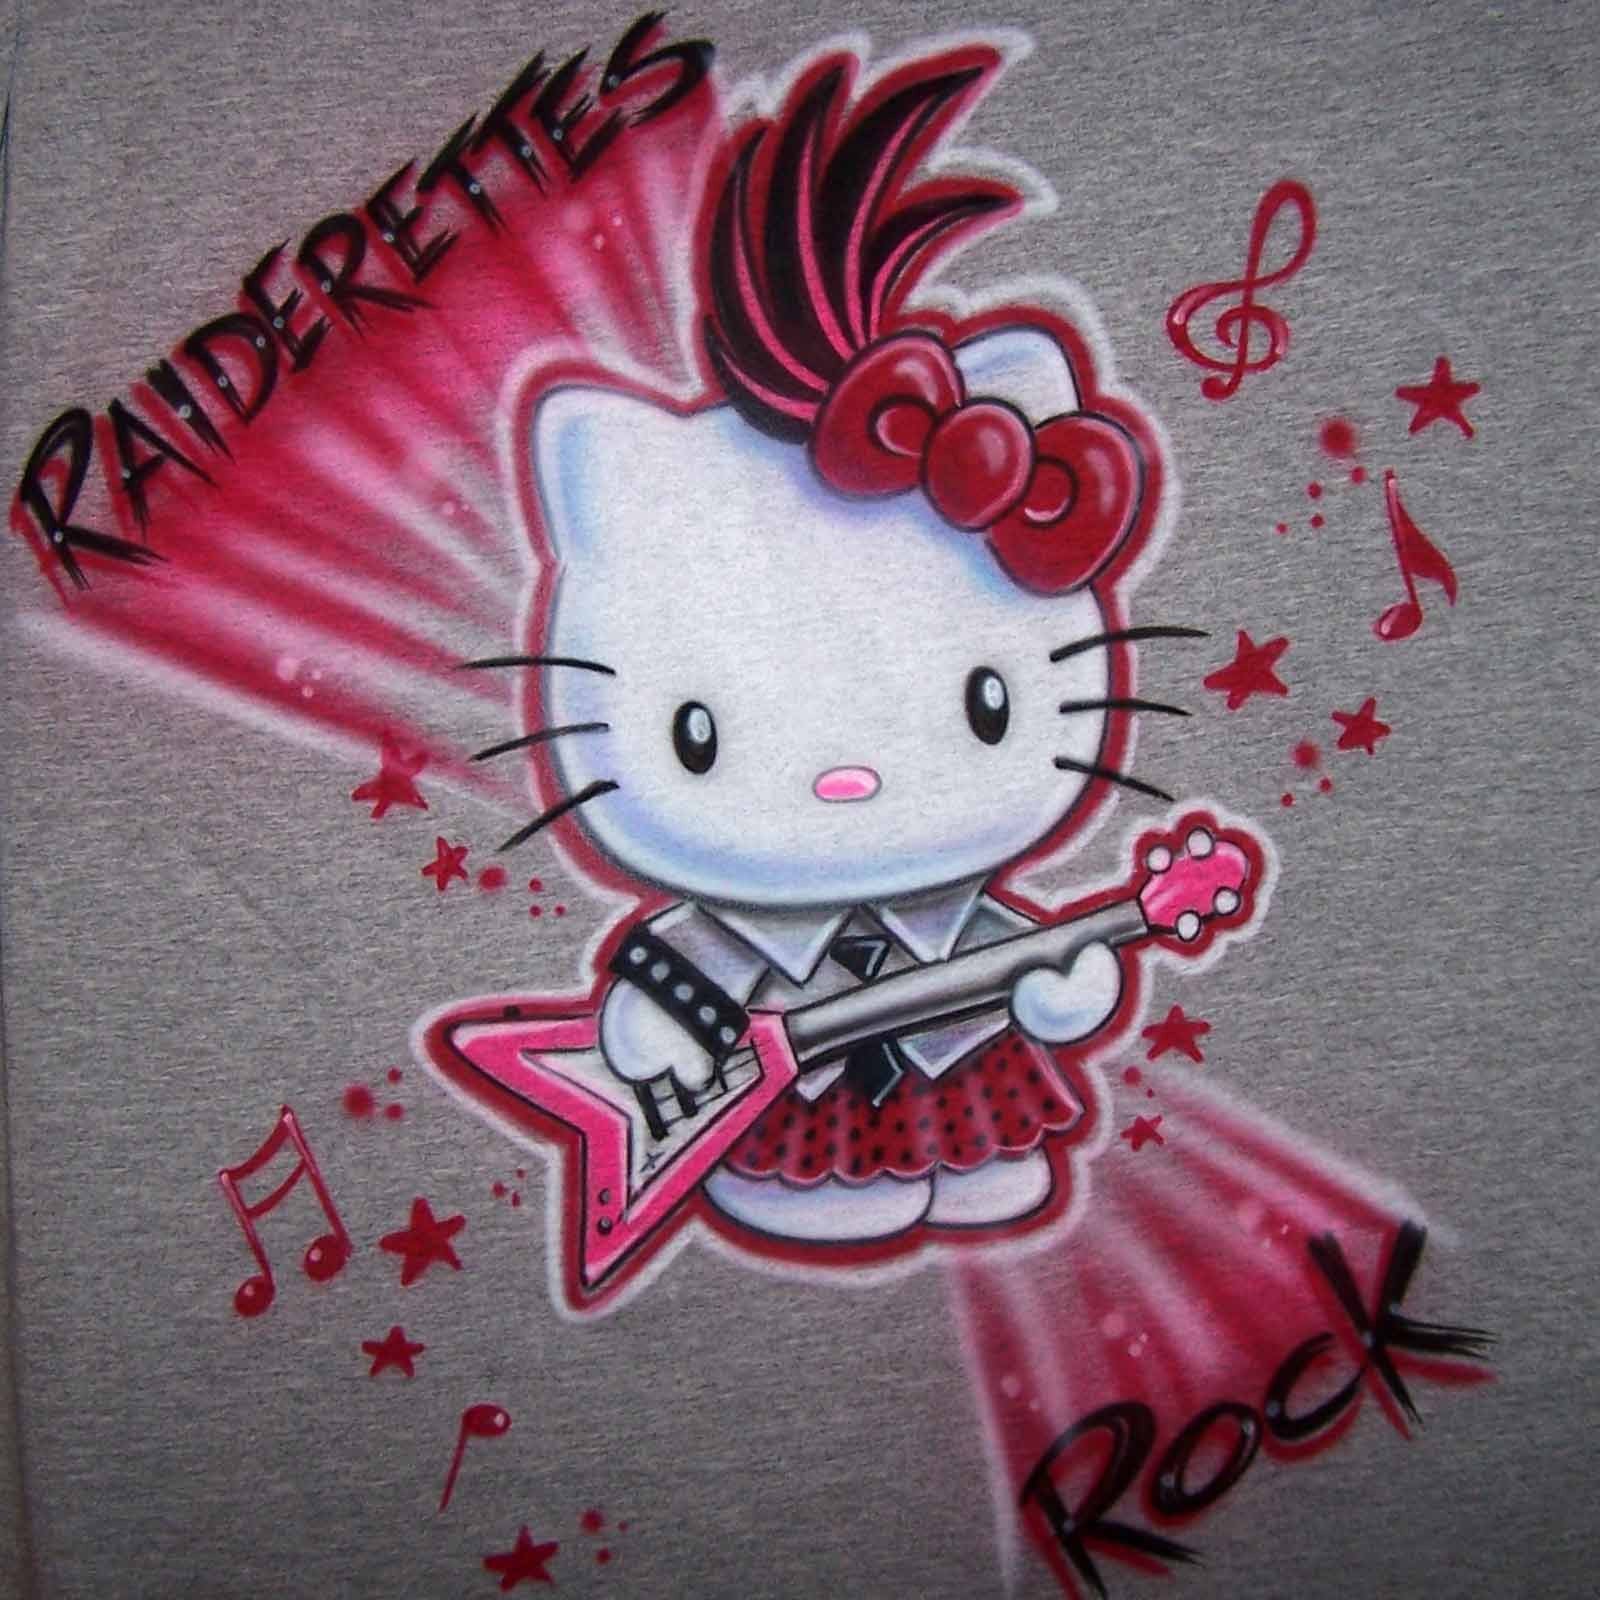 Hello Kitty Punk T-Shirts